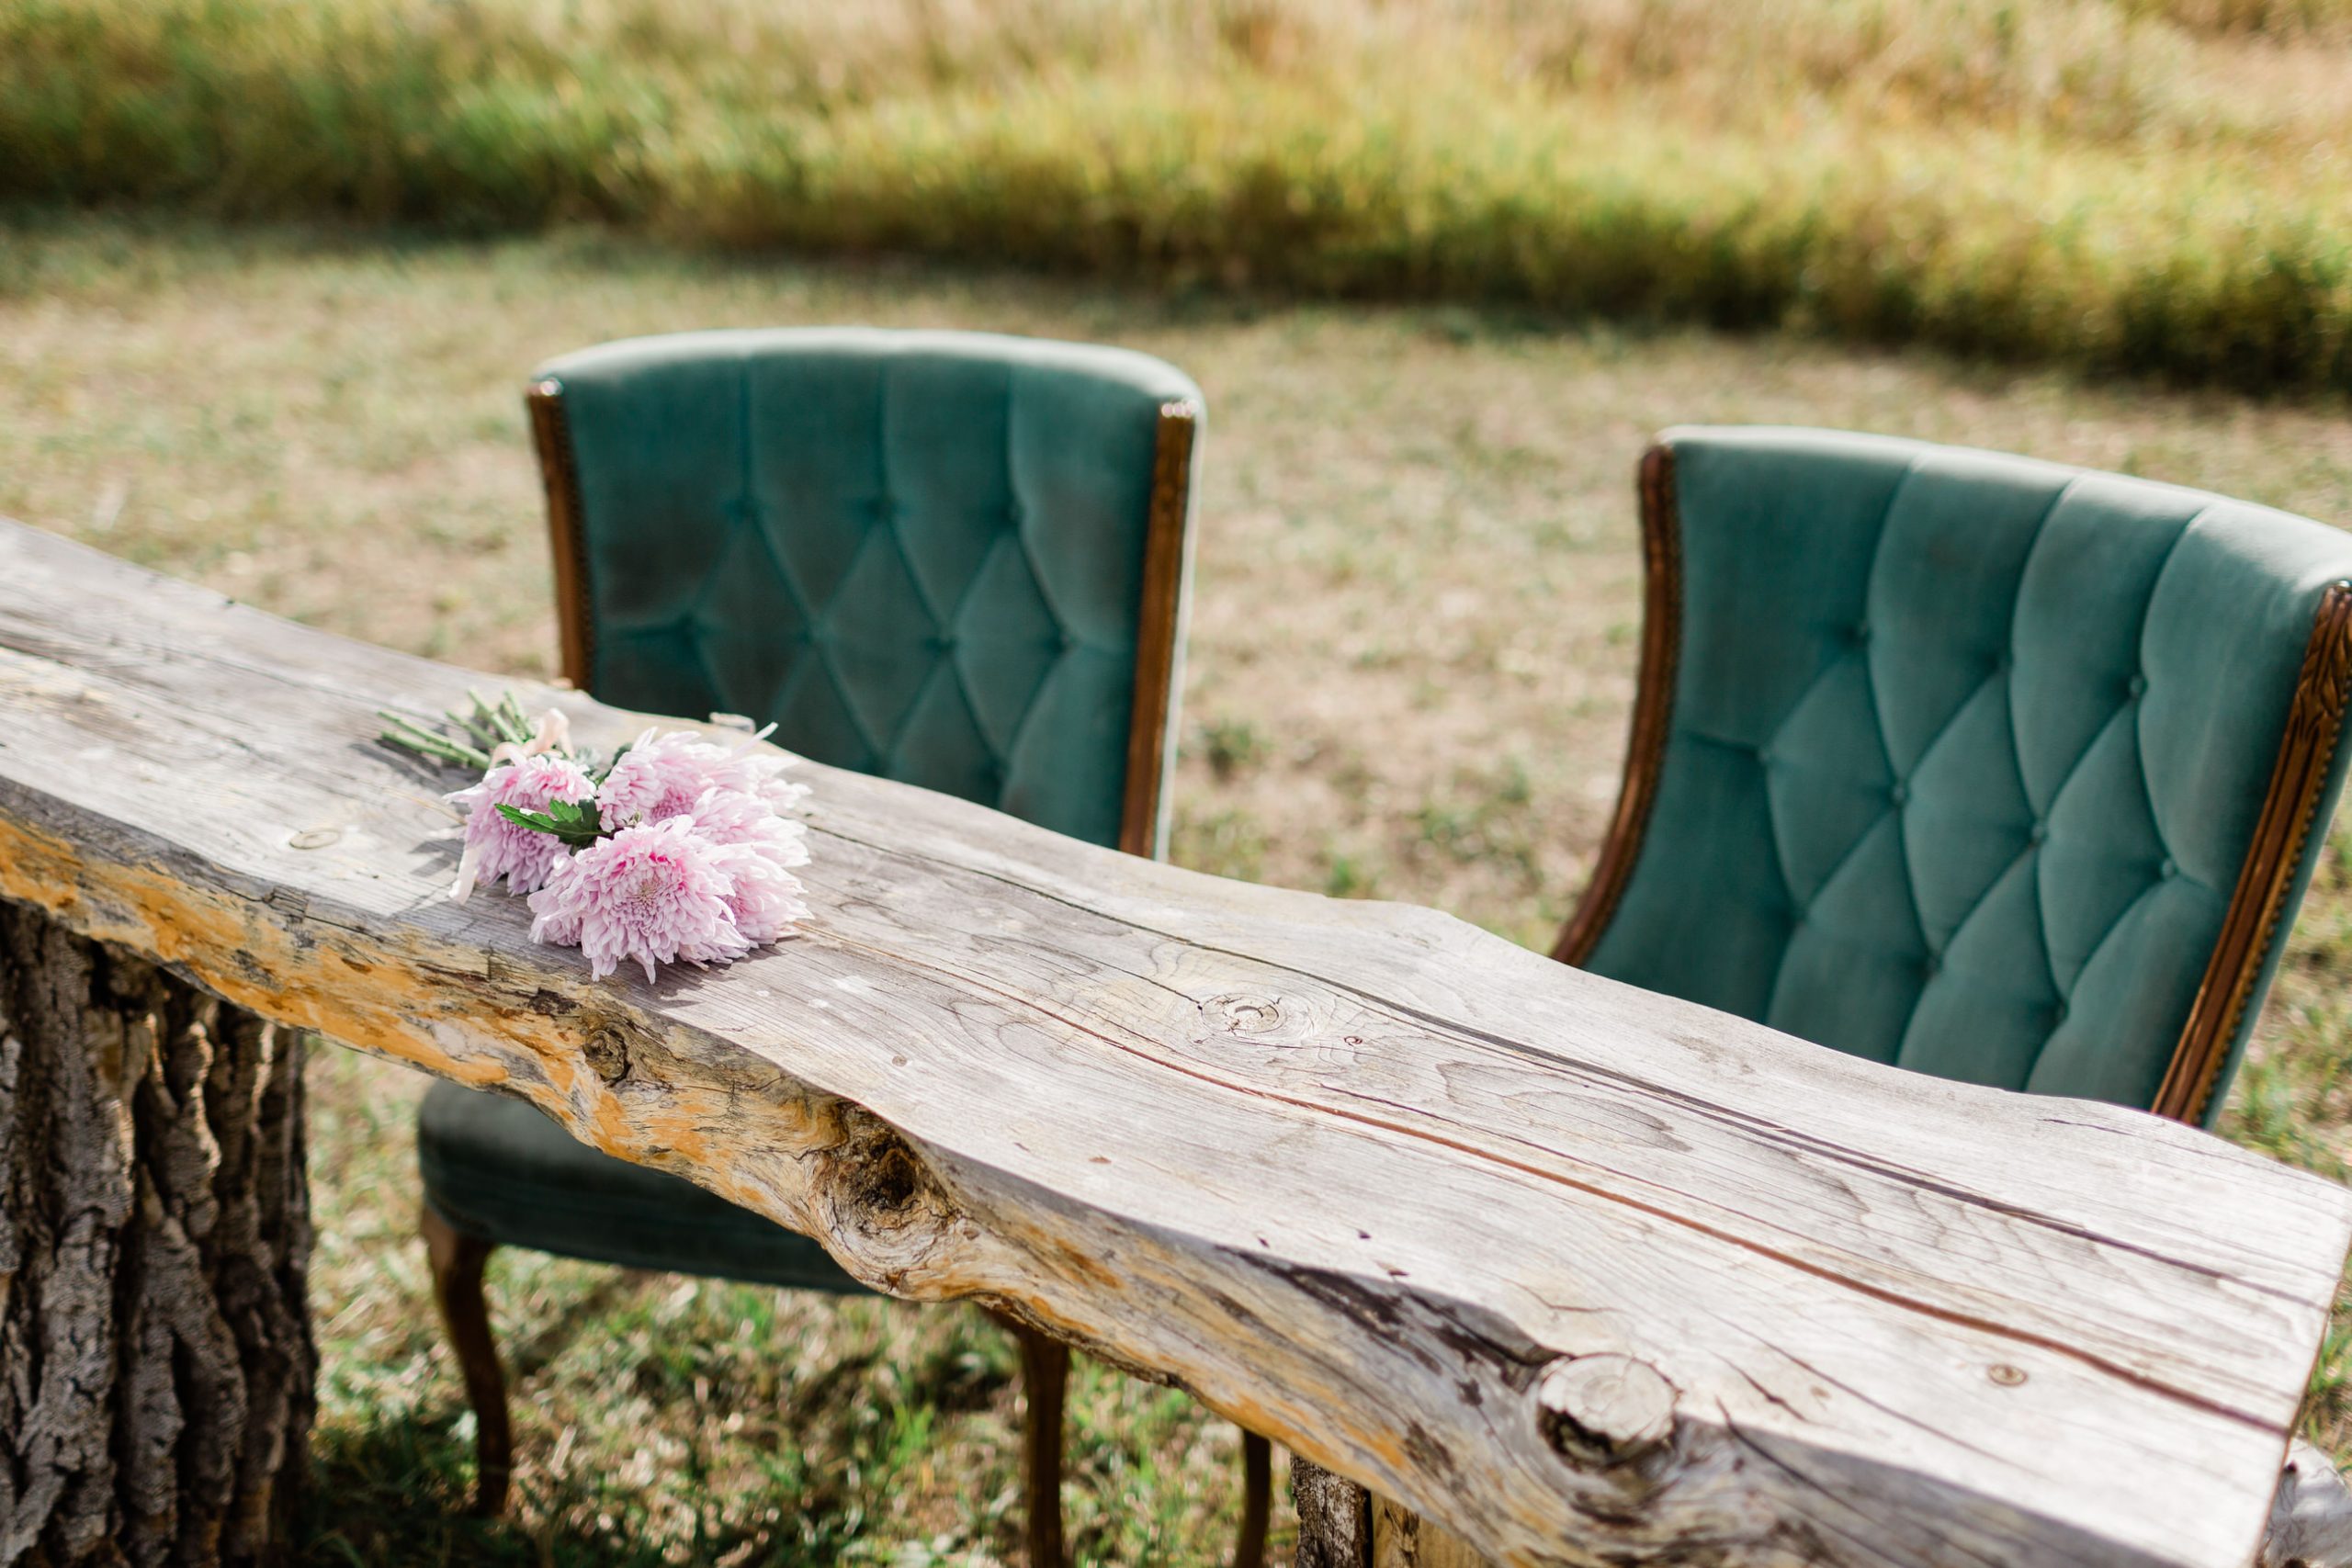 wedding ceremony site in outdoor Colorado meadow